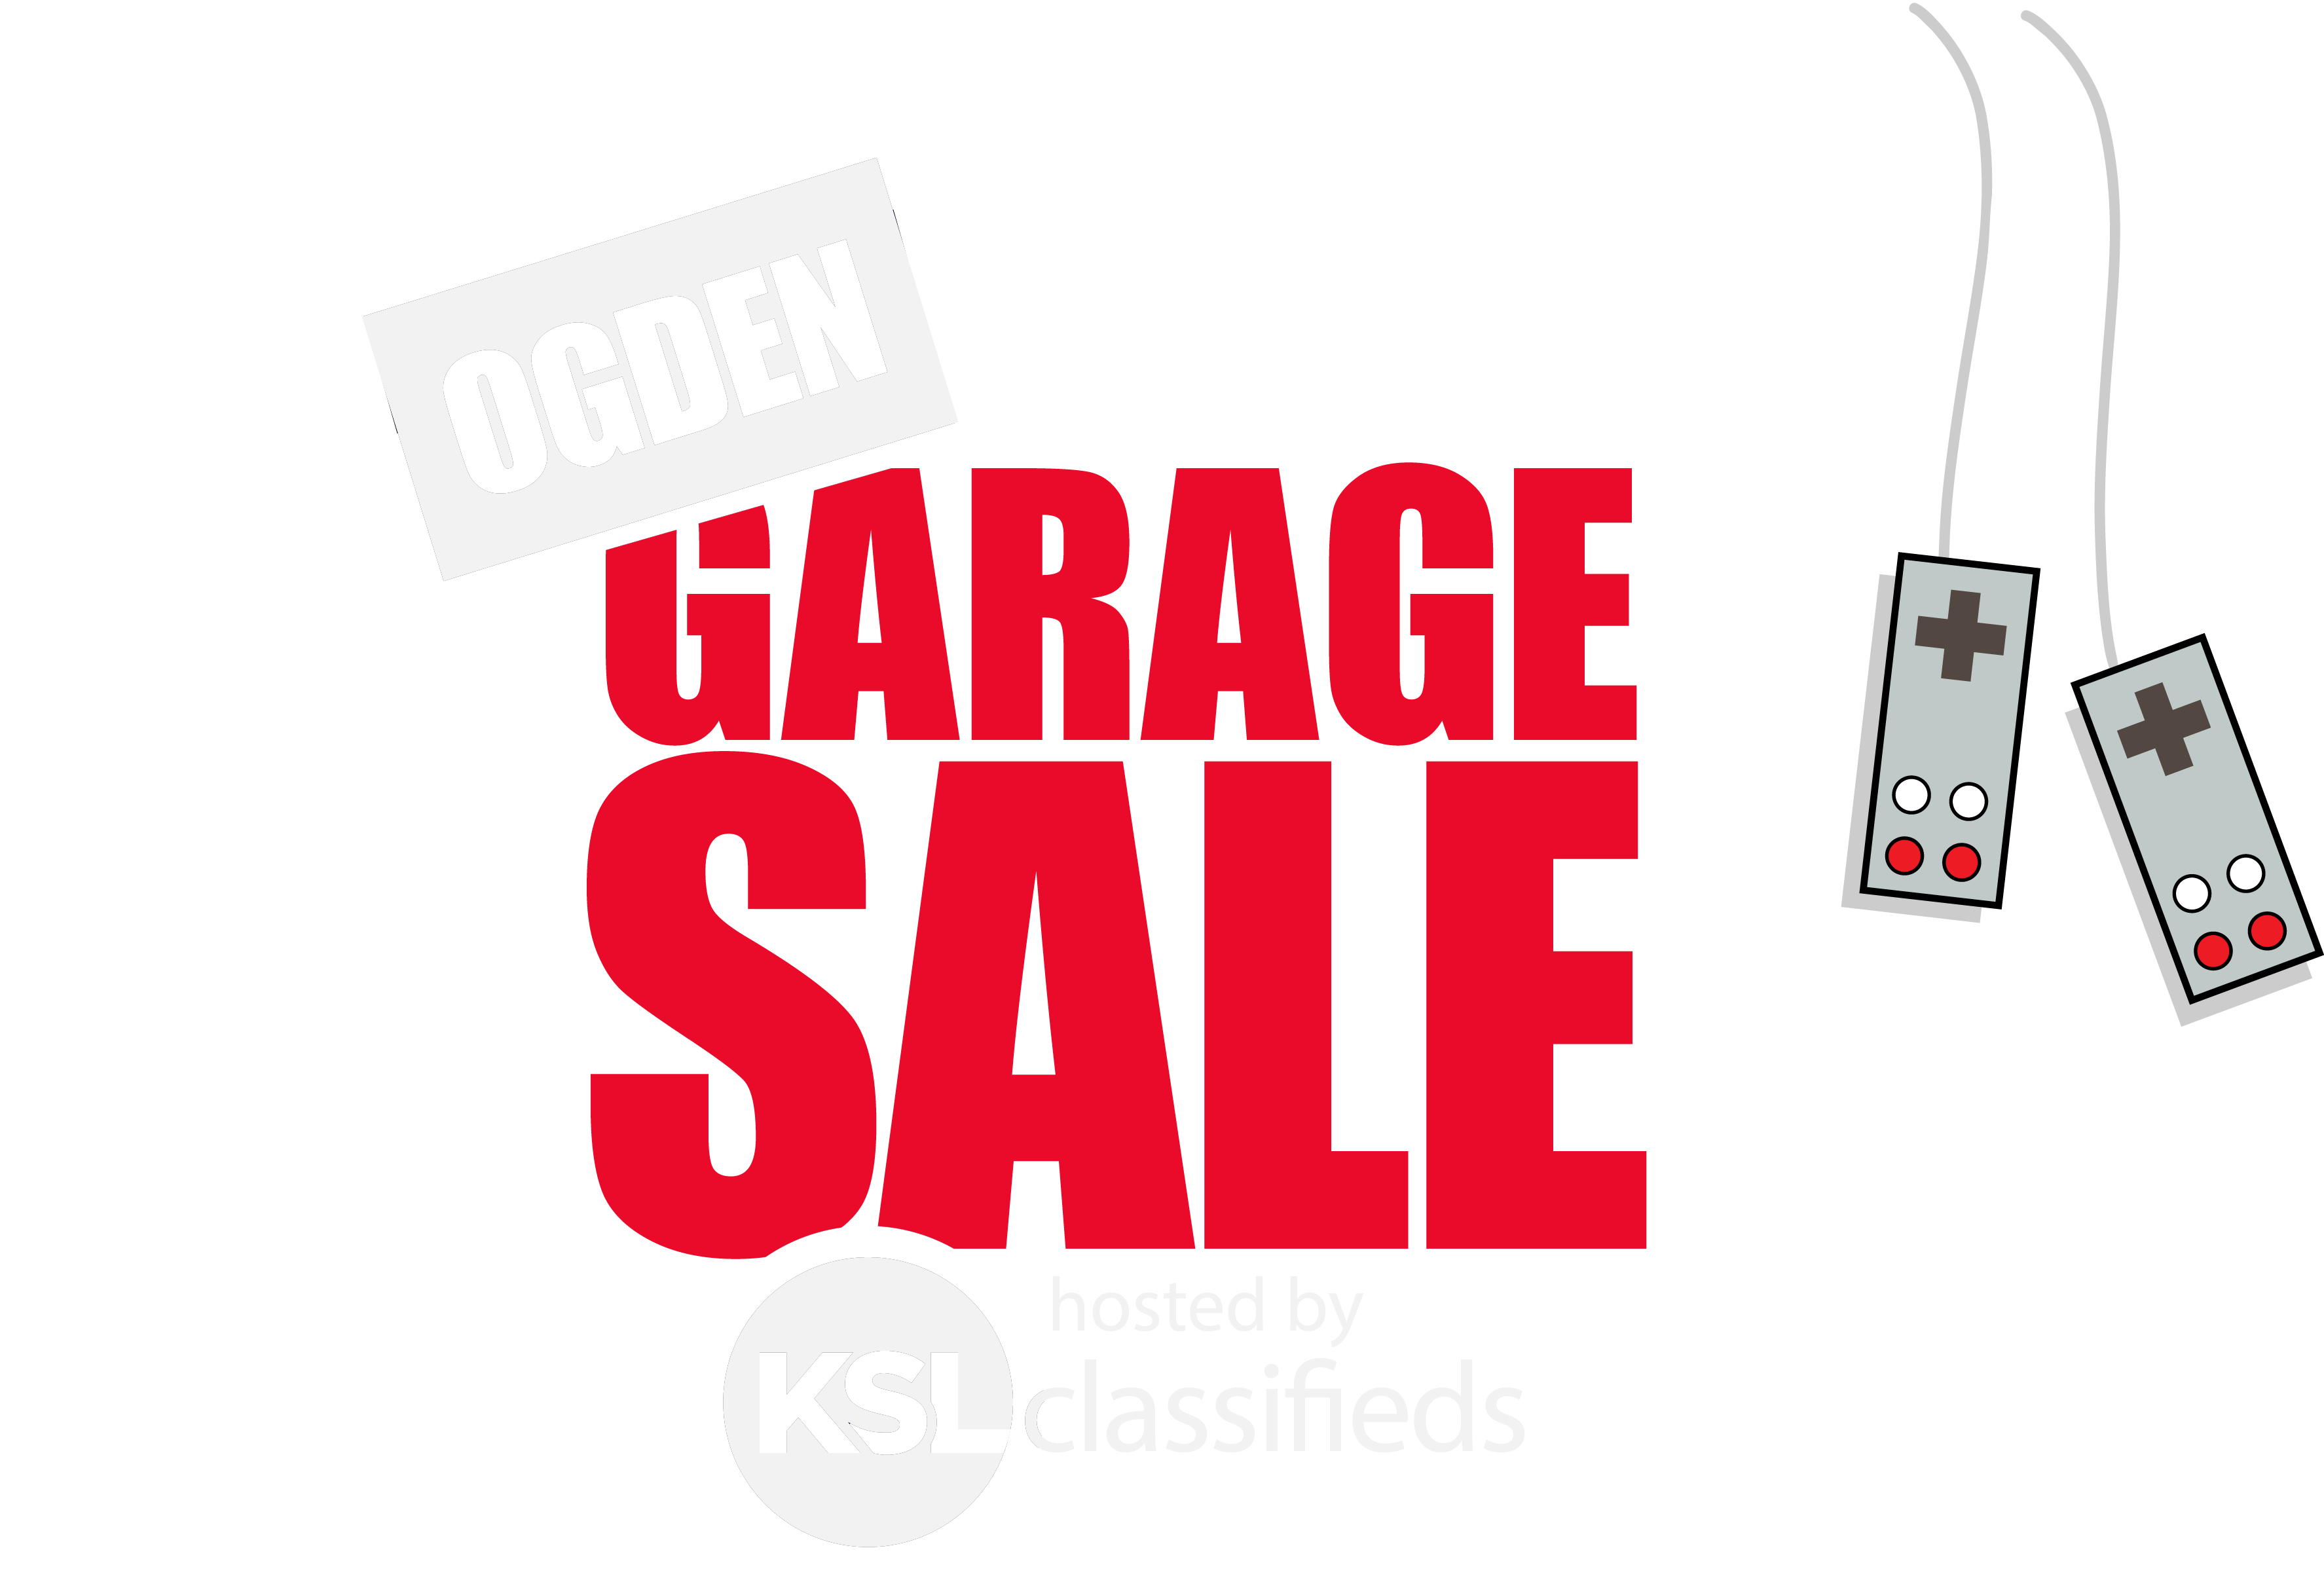 KSL Logo - Ogden Garage Sale